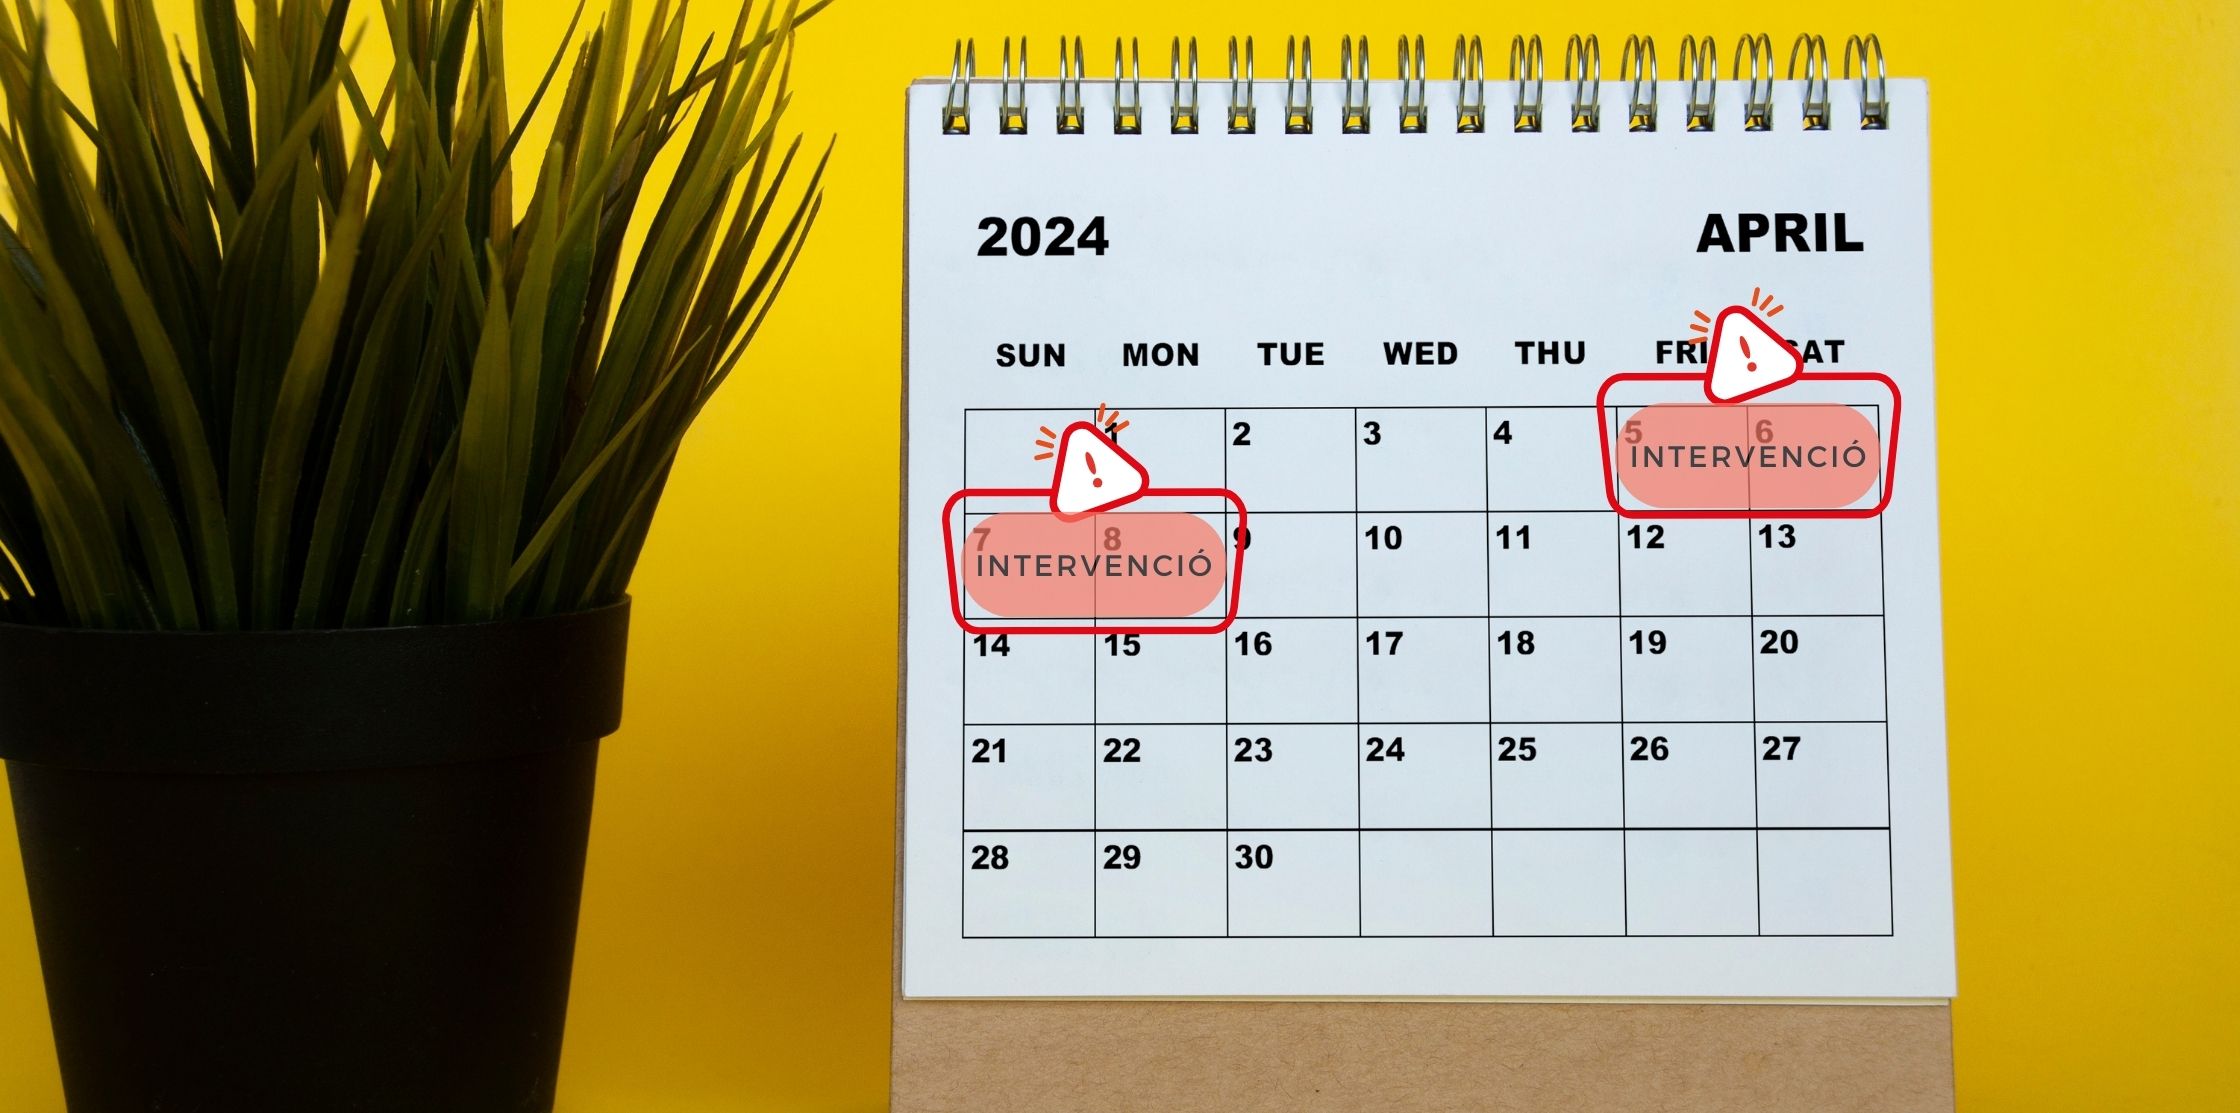 Kalender voor de maand april 2024 waarin de interventie wordt gemarkeerd, die een bezuiniging op een flink aantal AOC-diensten met zich meebrengt, met name van 5 tot 8 april.